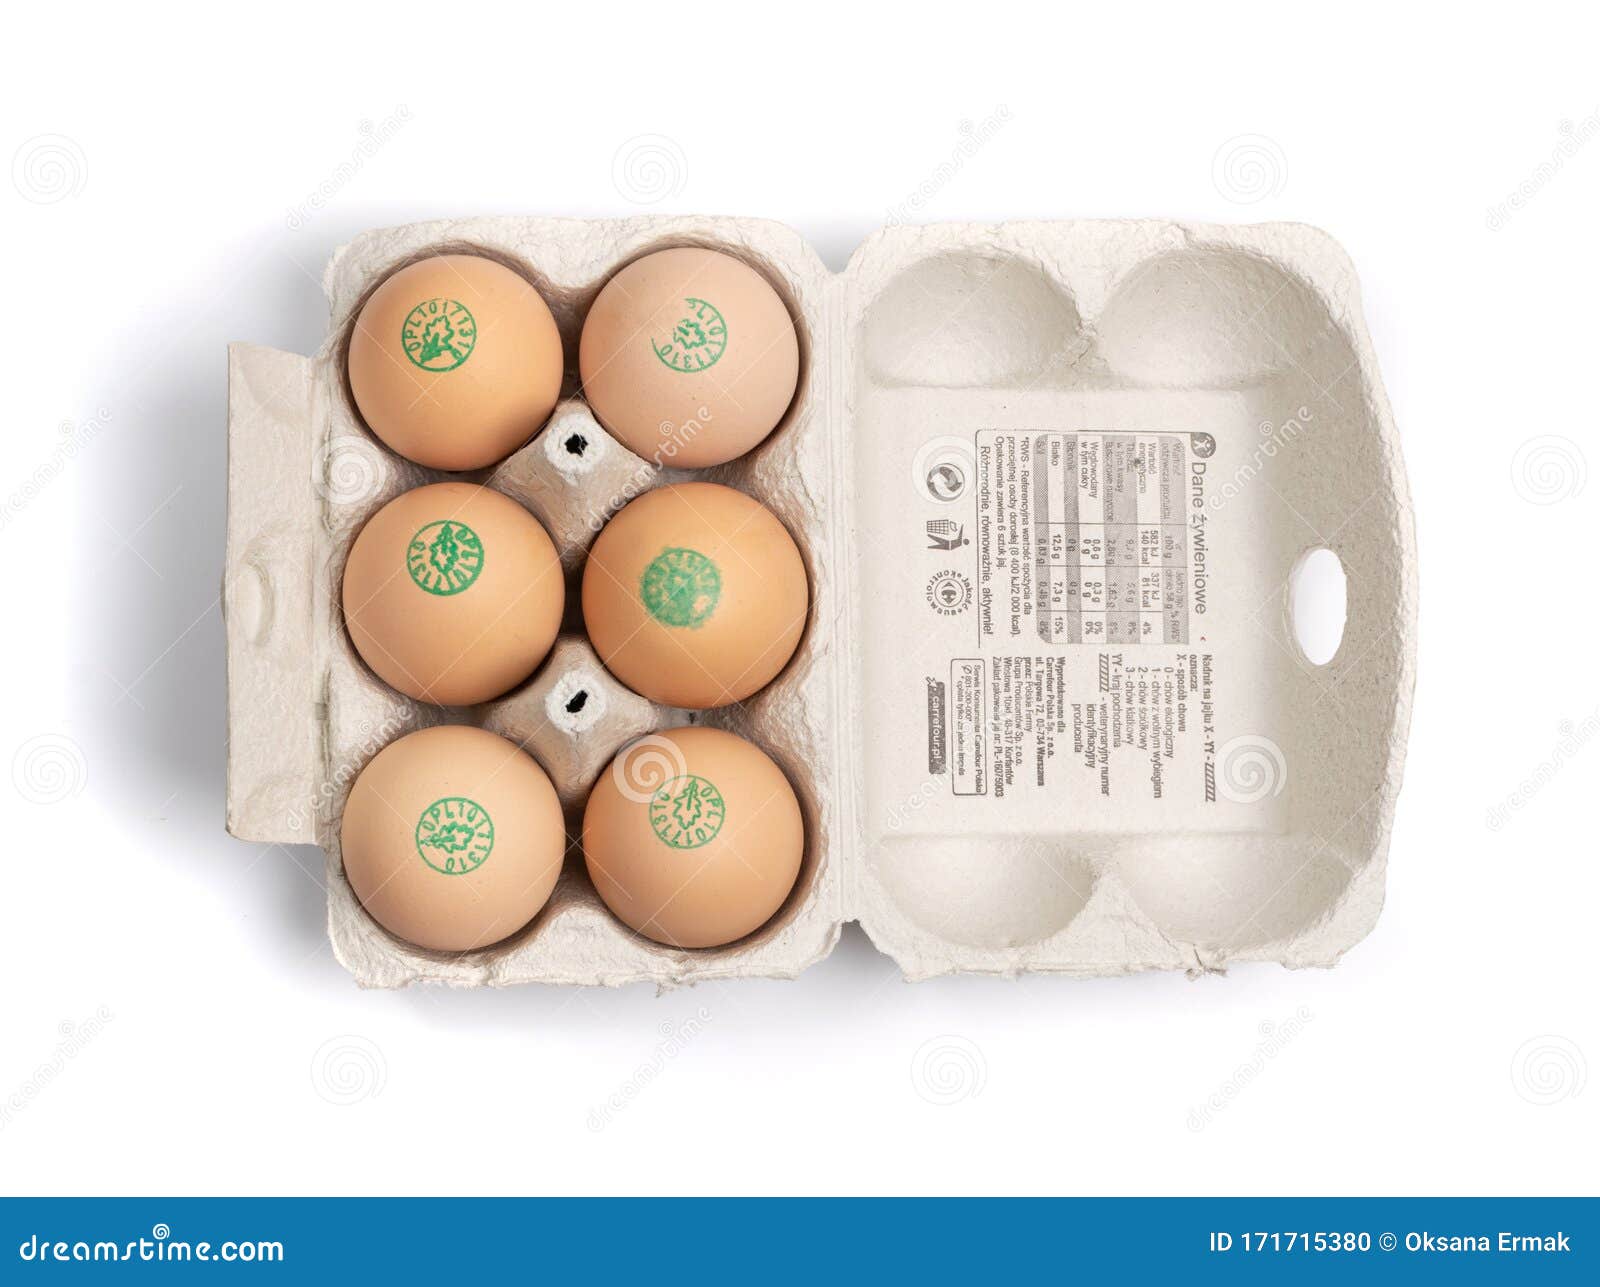 functie Tomaat Wortel Verpakking Van 6 Verse Bio-eieren Van Kippen in Poolse Karrefour,  Geïsoleerd Redactionele Afbeelding - Image of polen, ethisch: 171715380